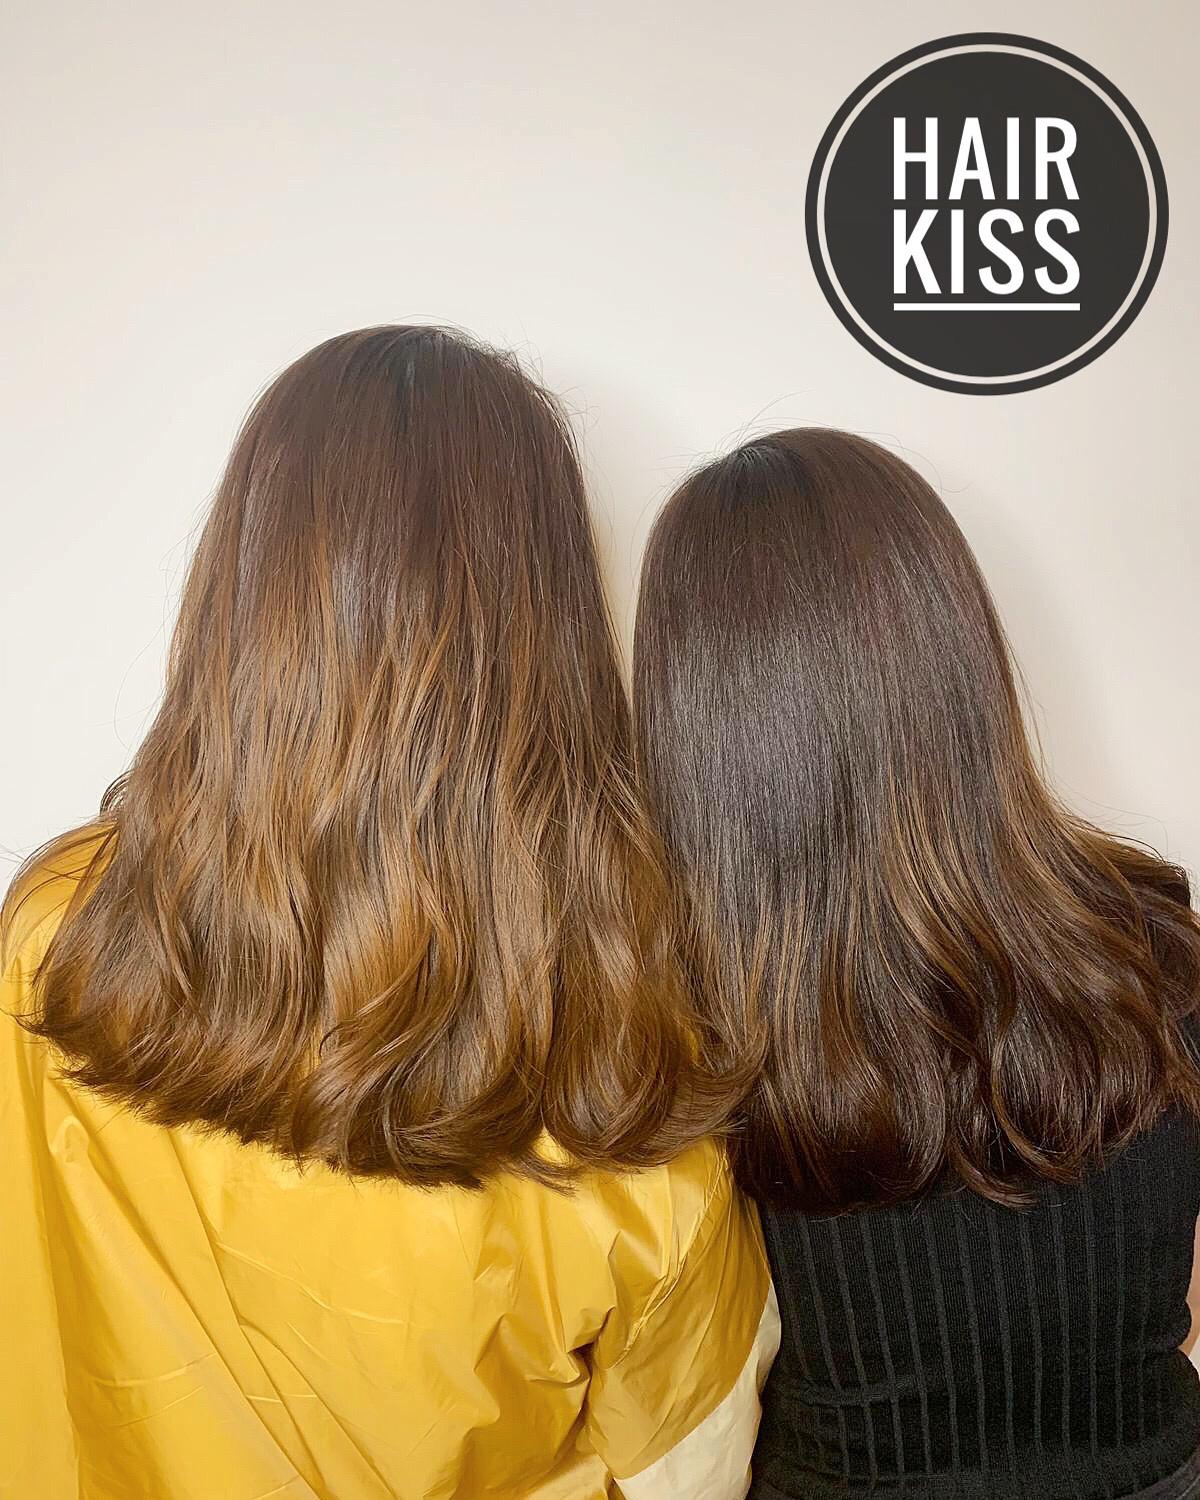 作品參考 / 最新消息:Hair kiss